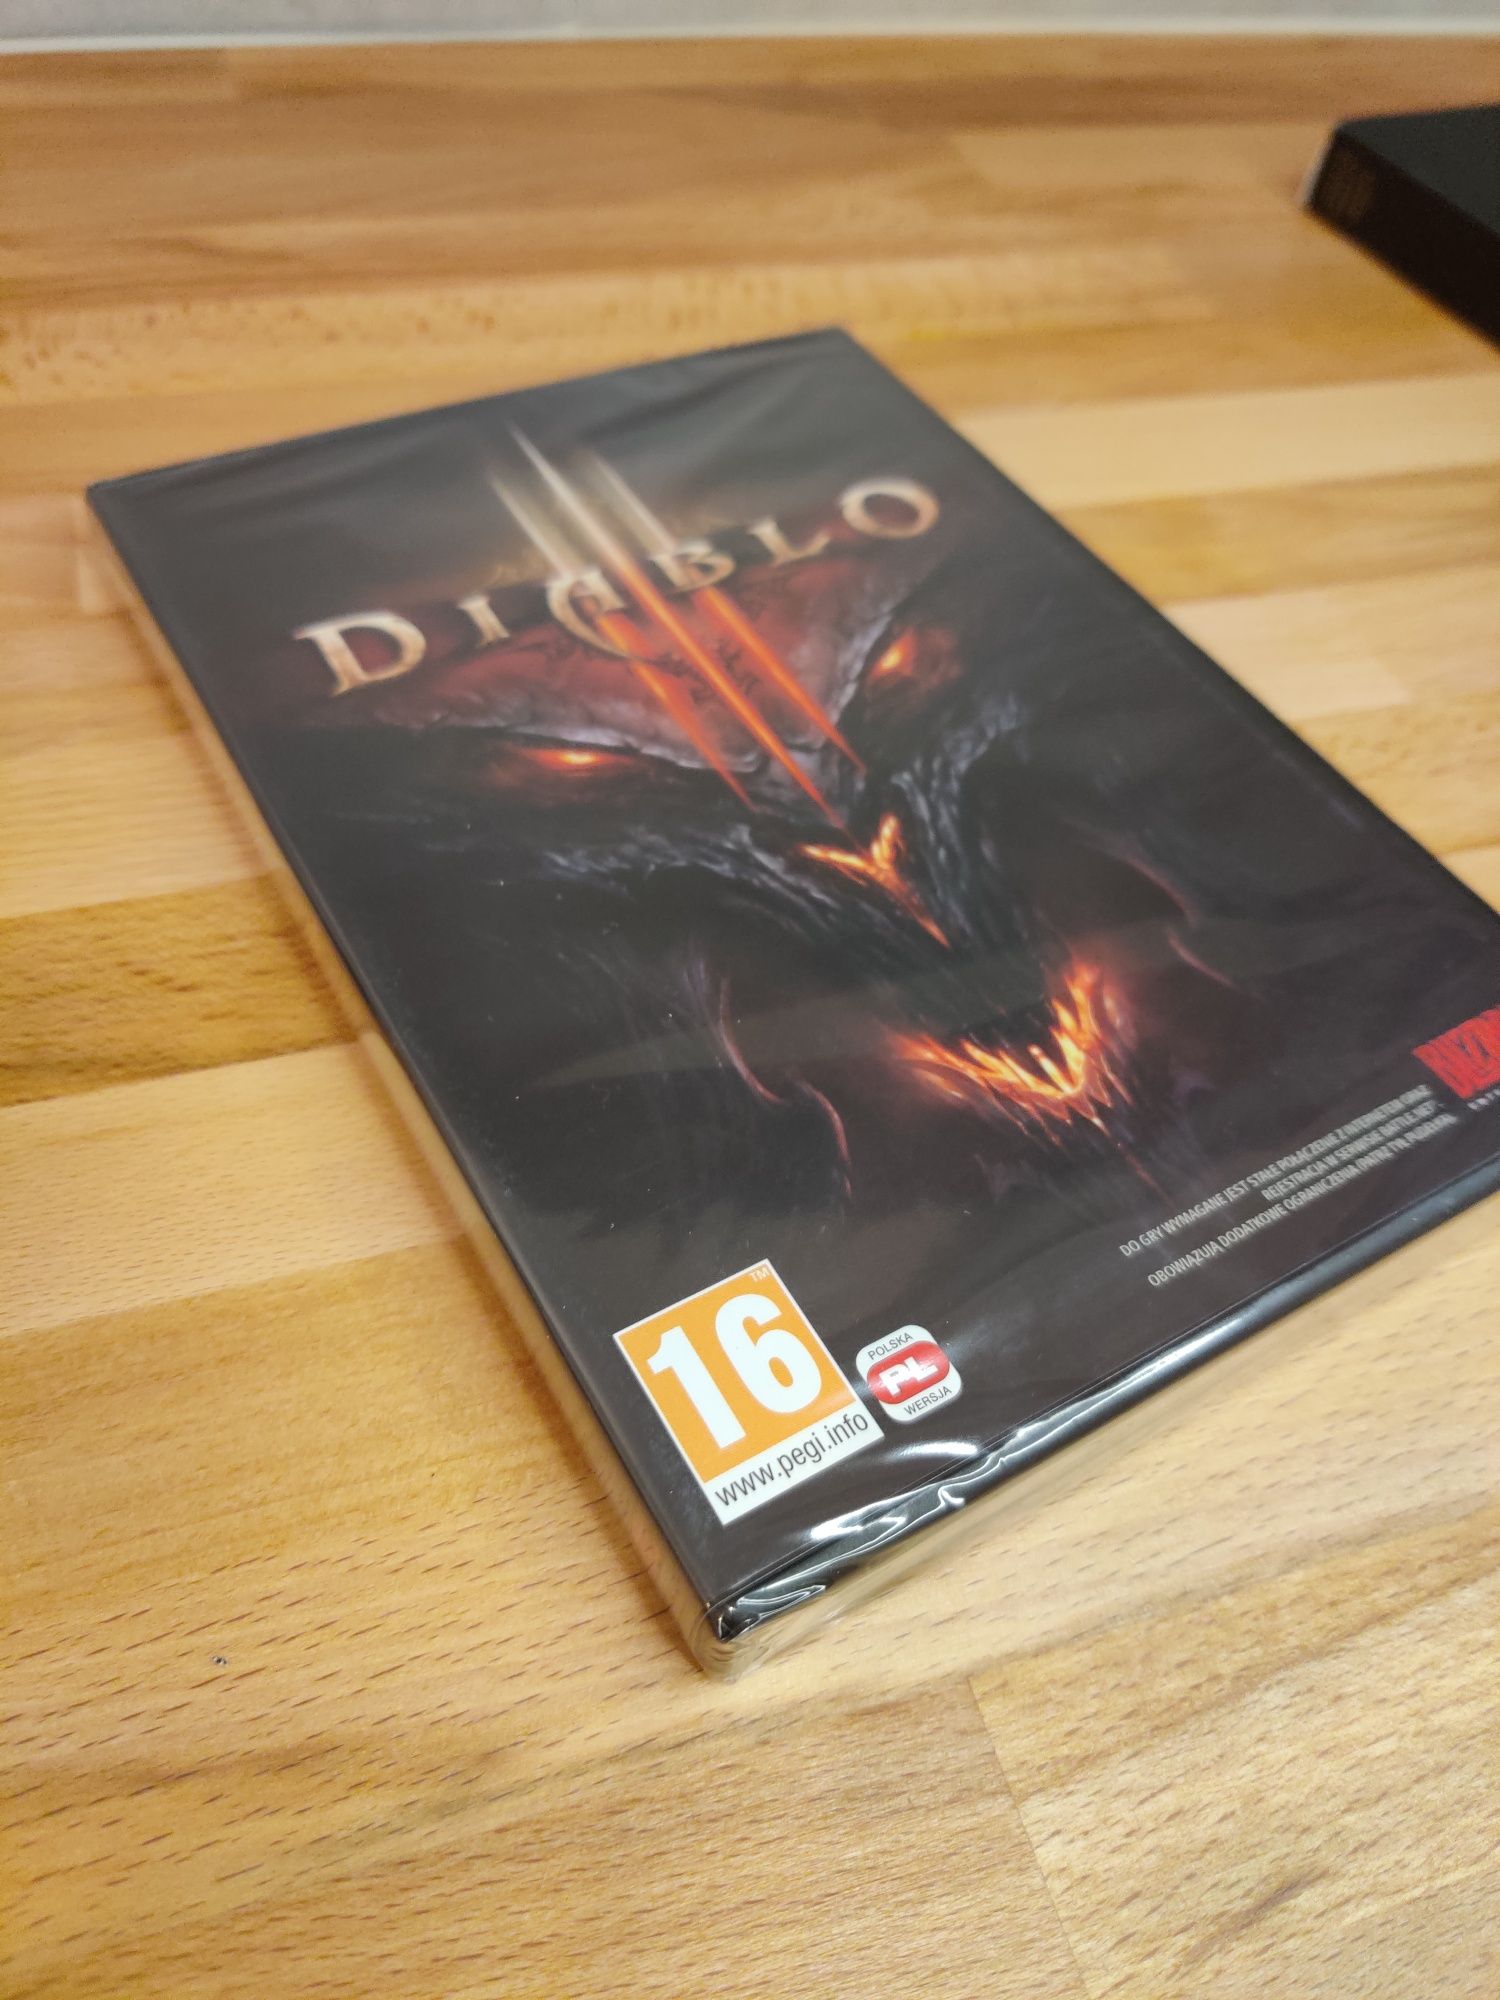 Gra Diablo 3 PC - wersja pudełkowa